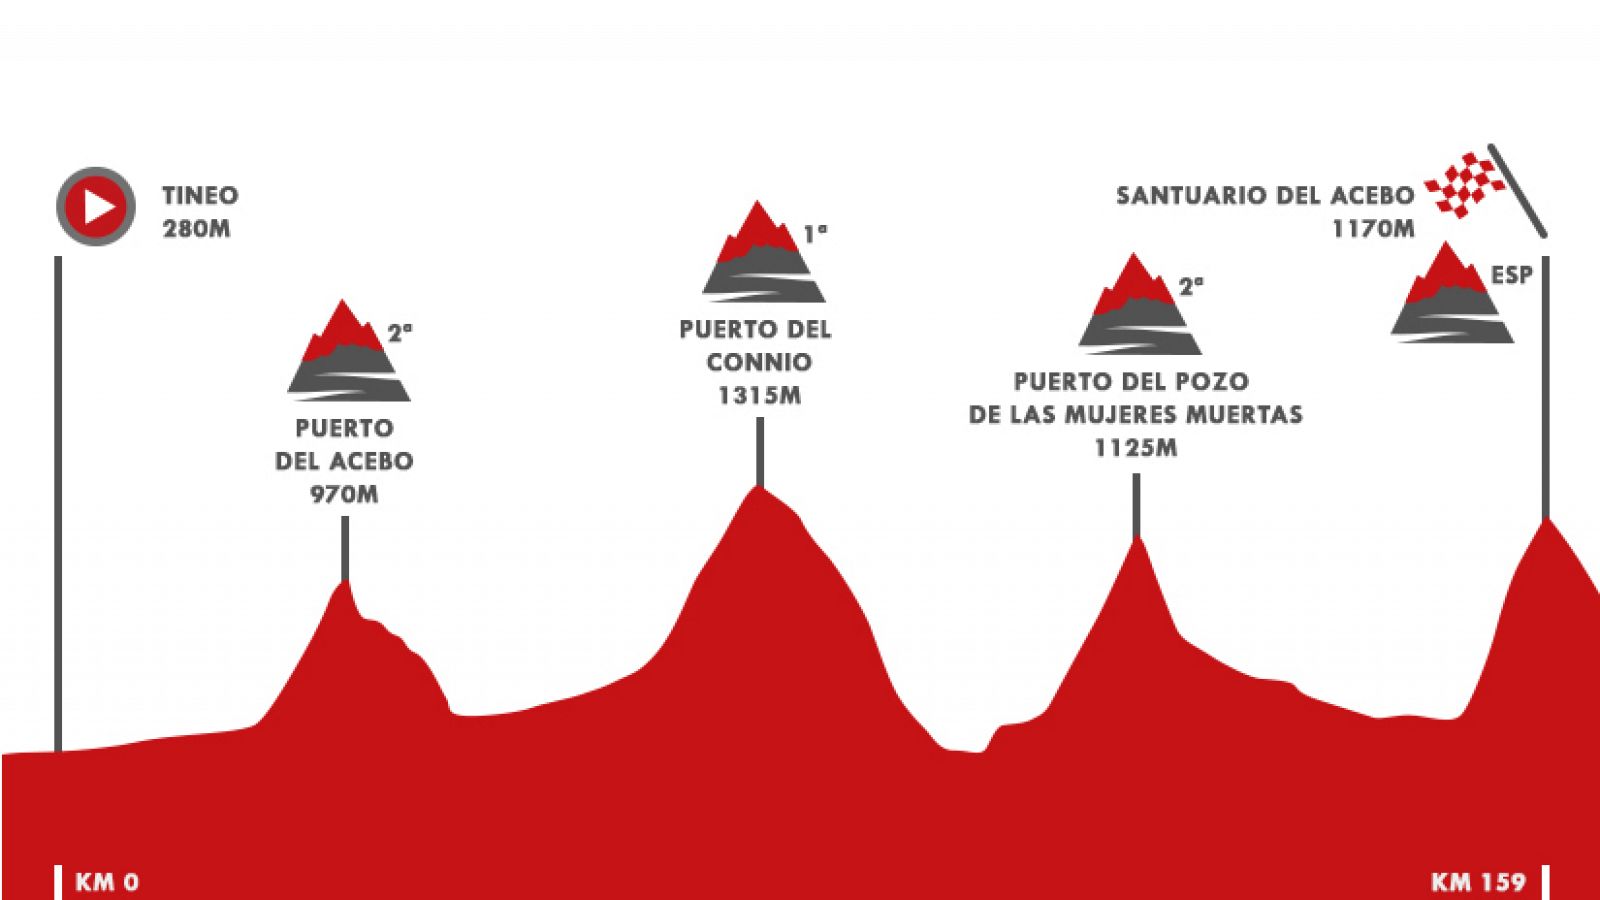 Vuelta a España 2019 | Etapa 15: Tineo - Santuario del Acebo